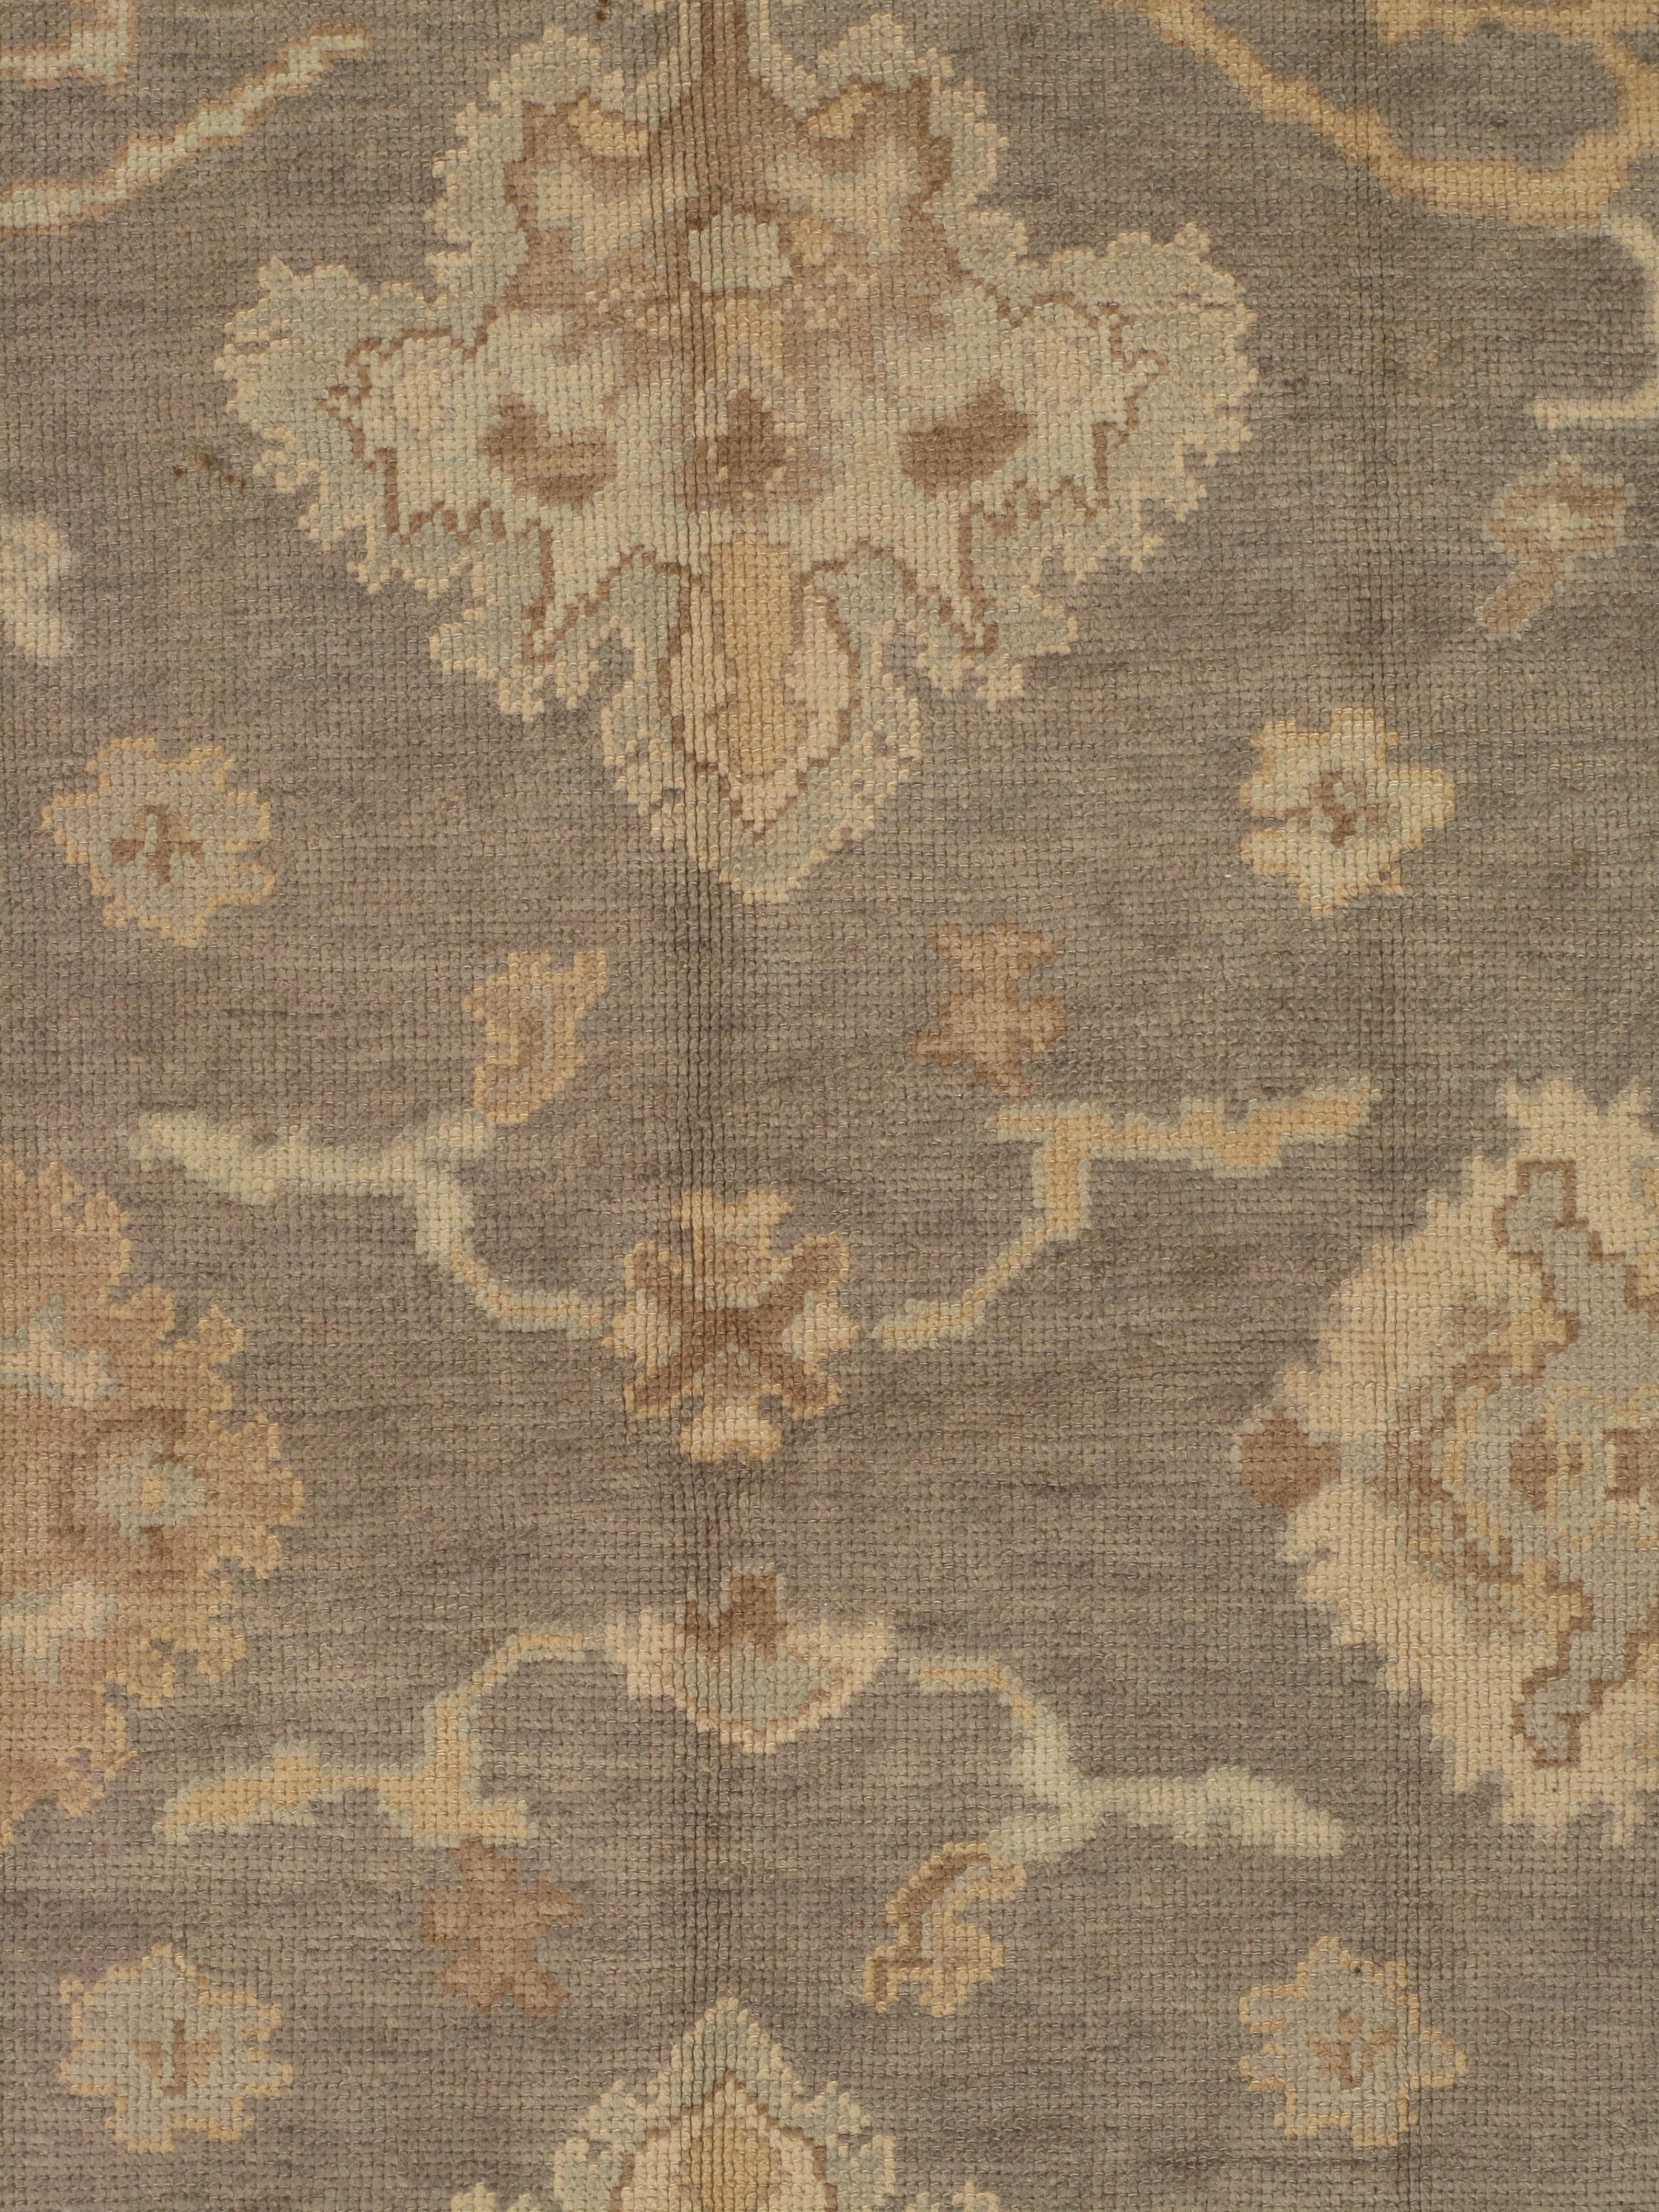 Wool Vintage Oushak Carpet, Oriental Rug, Handmade Grey, Ivory, Saffron For Sale